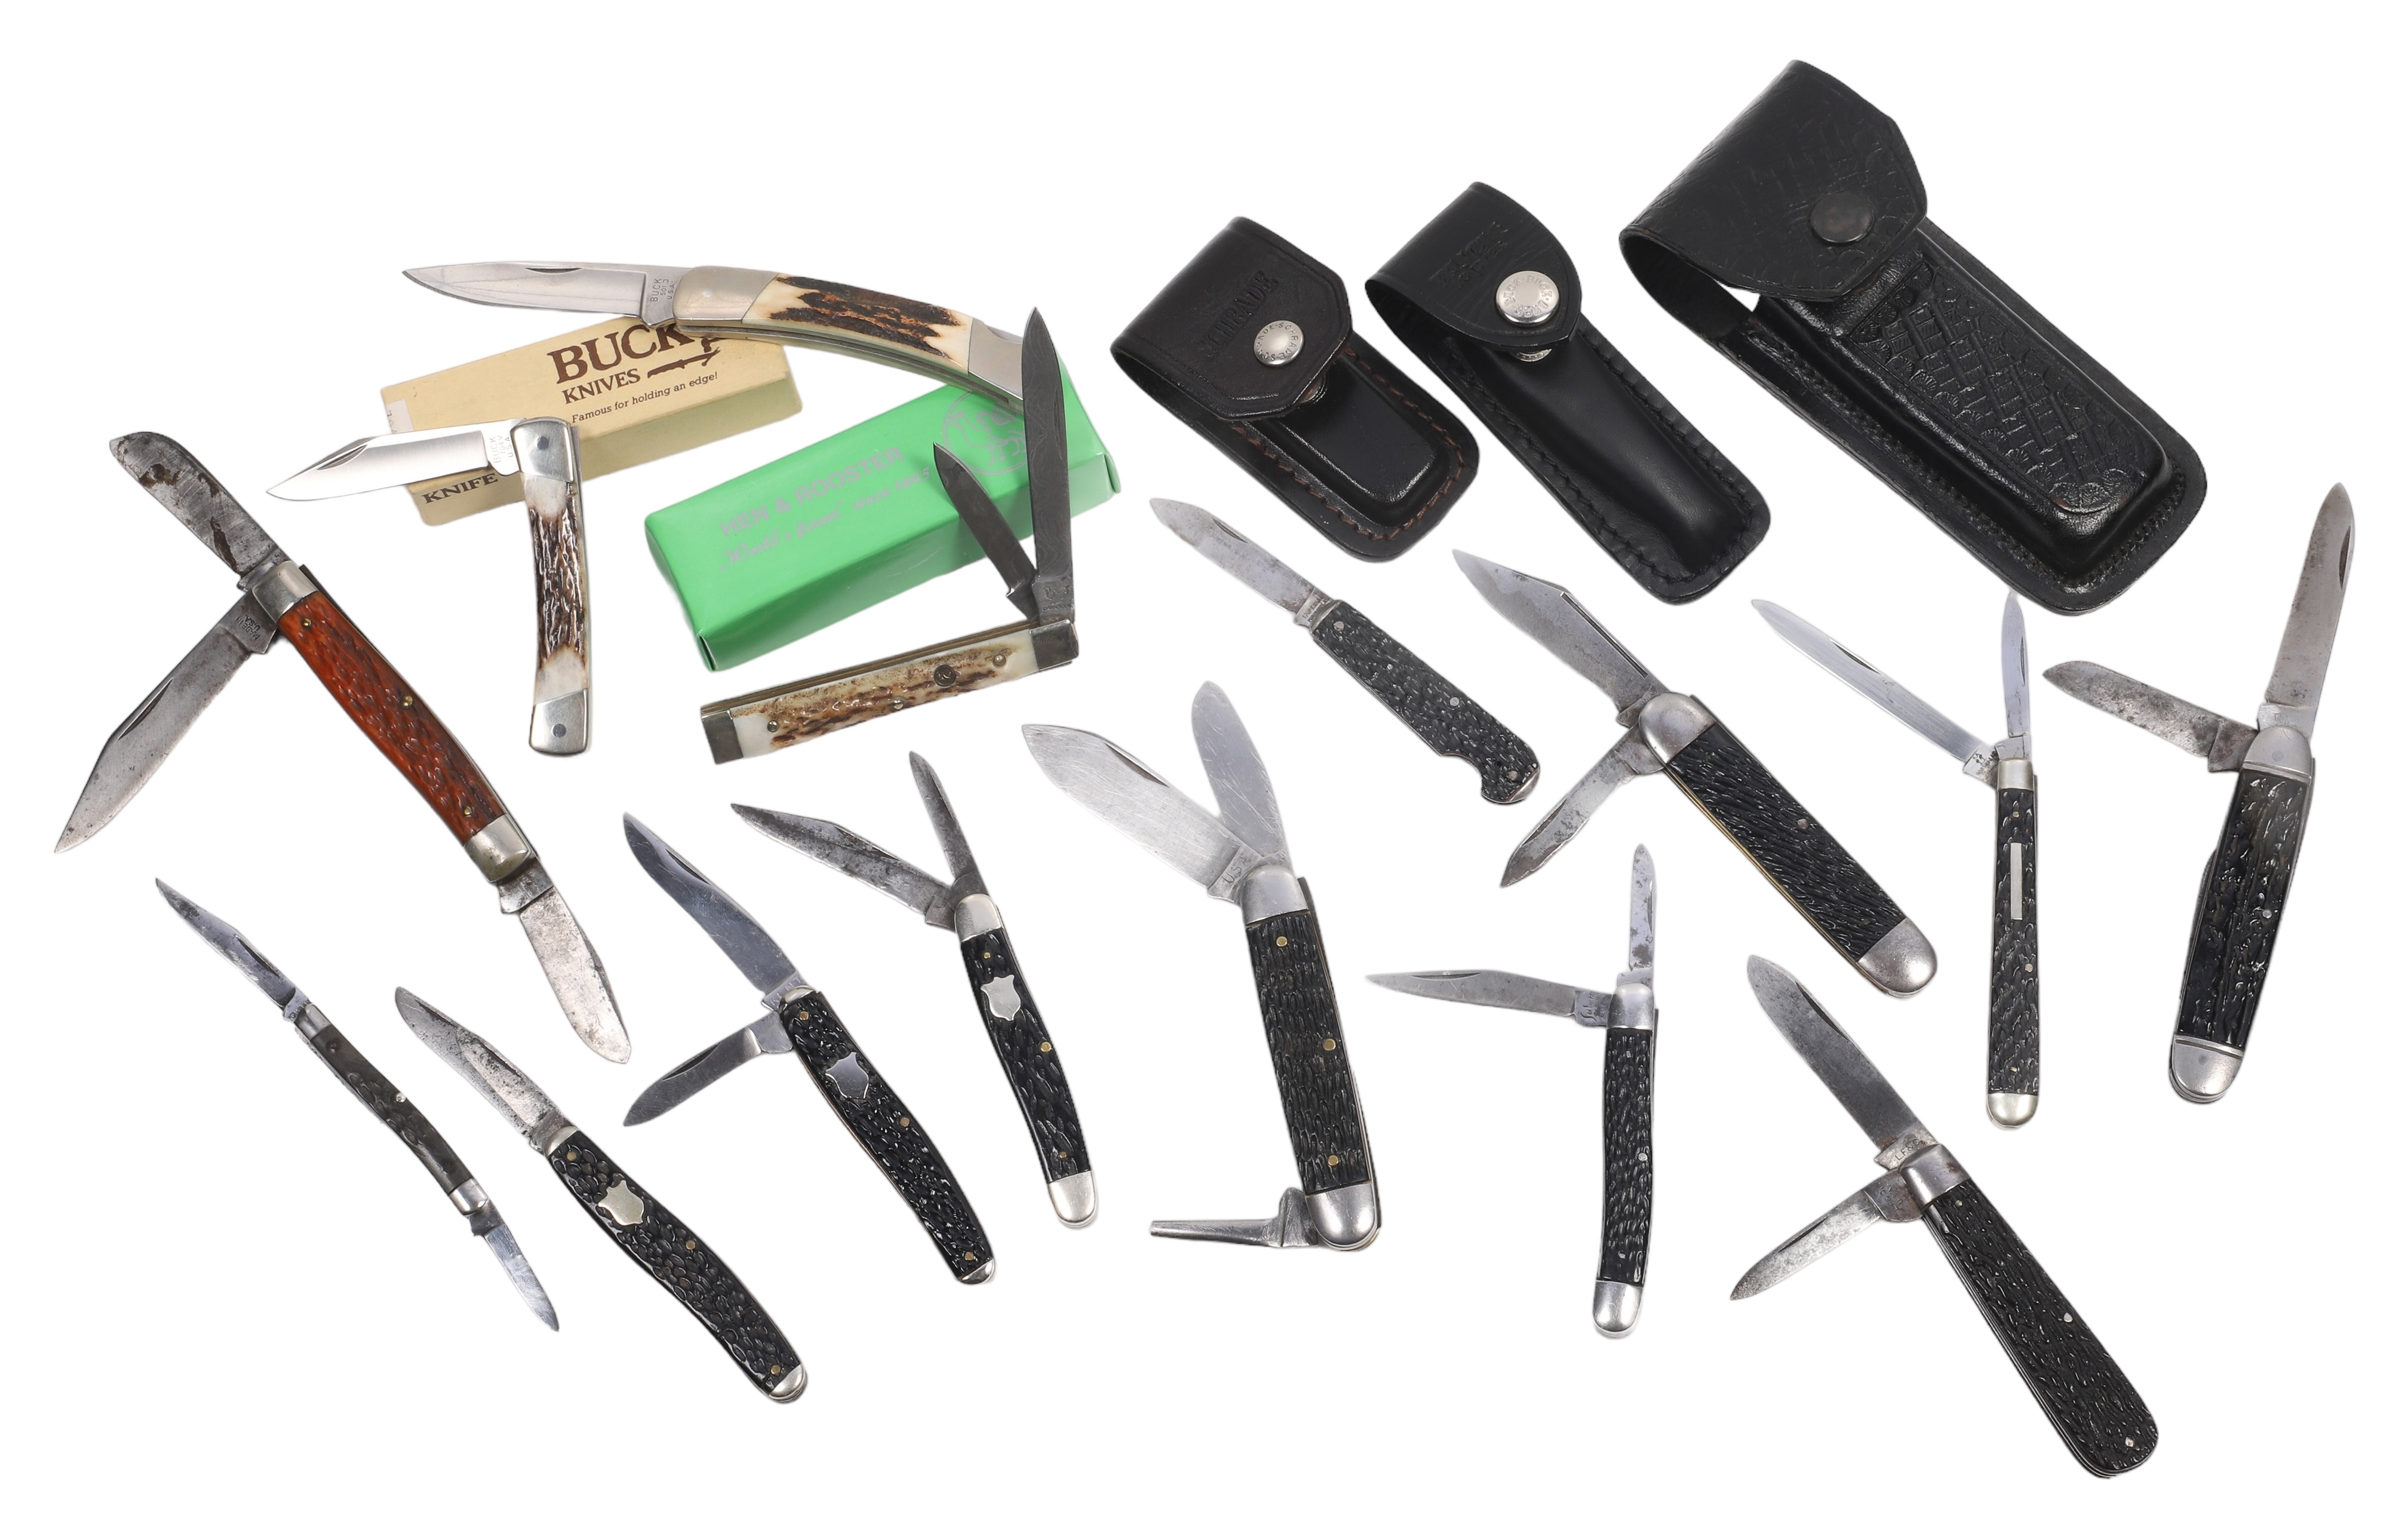 (15) Antler handle pocket knives, including